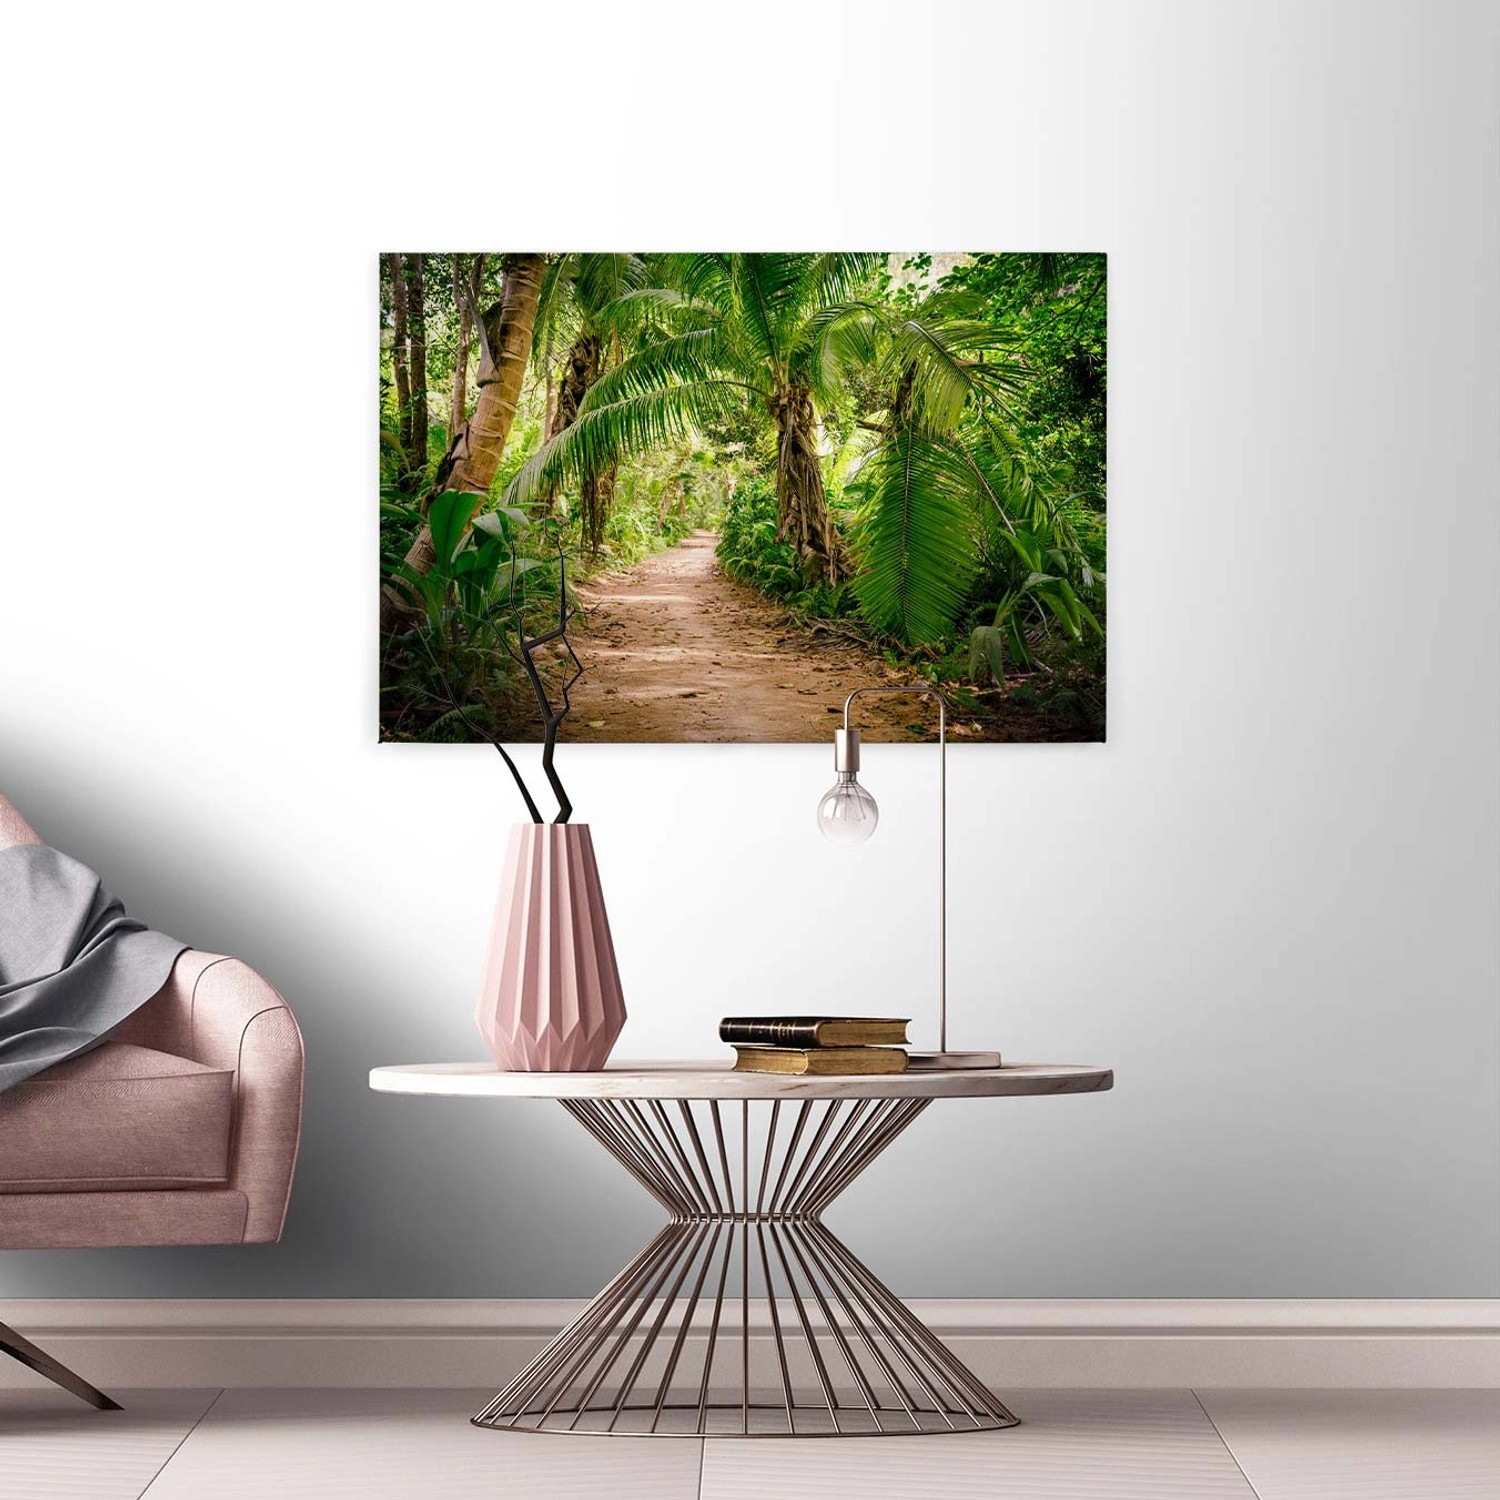 Bricoflor Bild Mit Dschungel Motiv In Grün Palmen Leinwandbild Ideal Für Badezimmer Und Schlafzimmer Regenwald Wandbild 